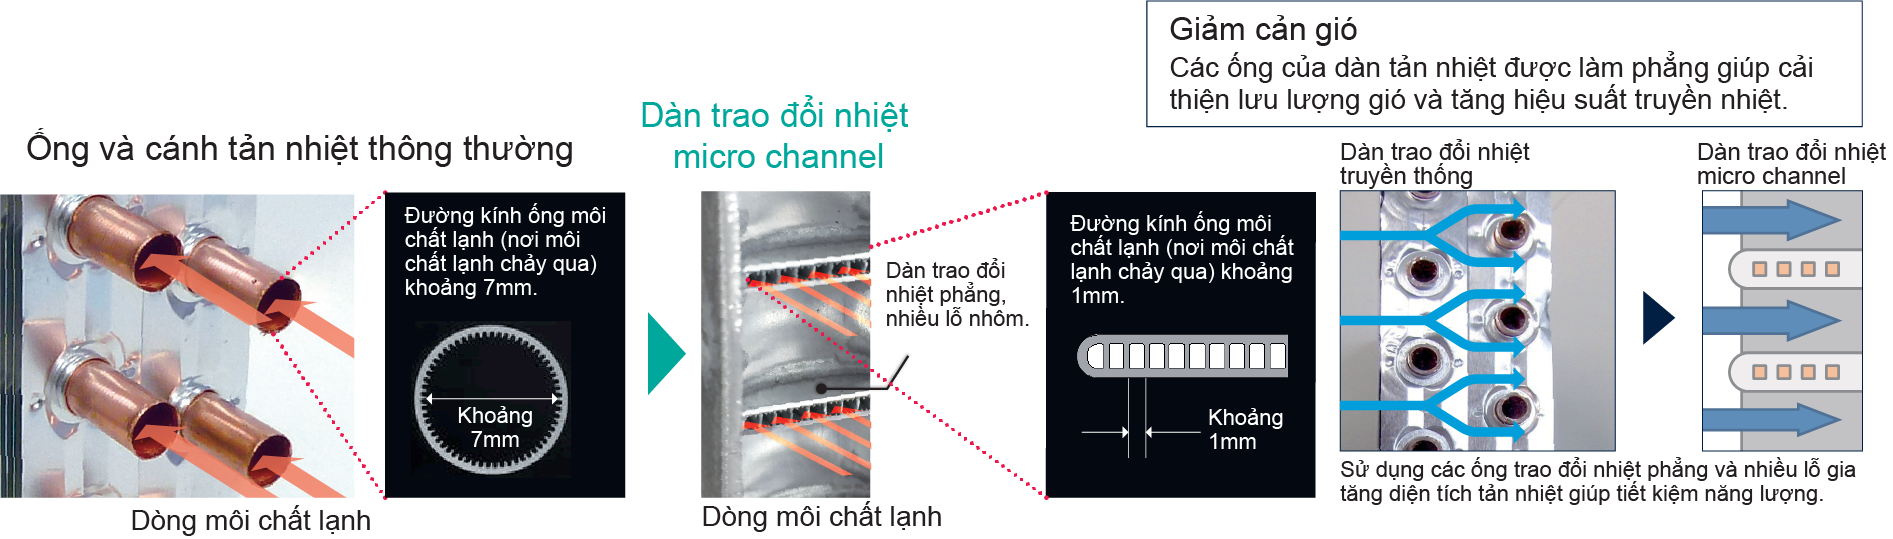 Công suất ngưng tụ cao với dàn trao đổi nhiệt micro channel